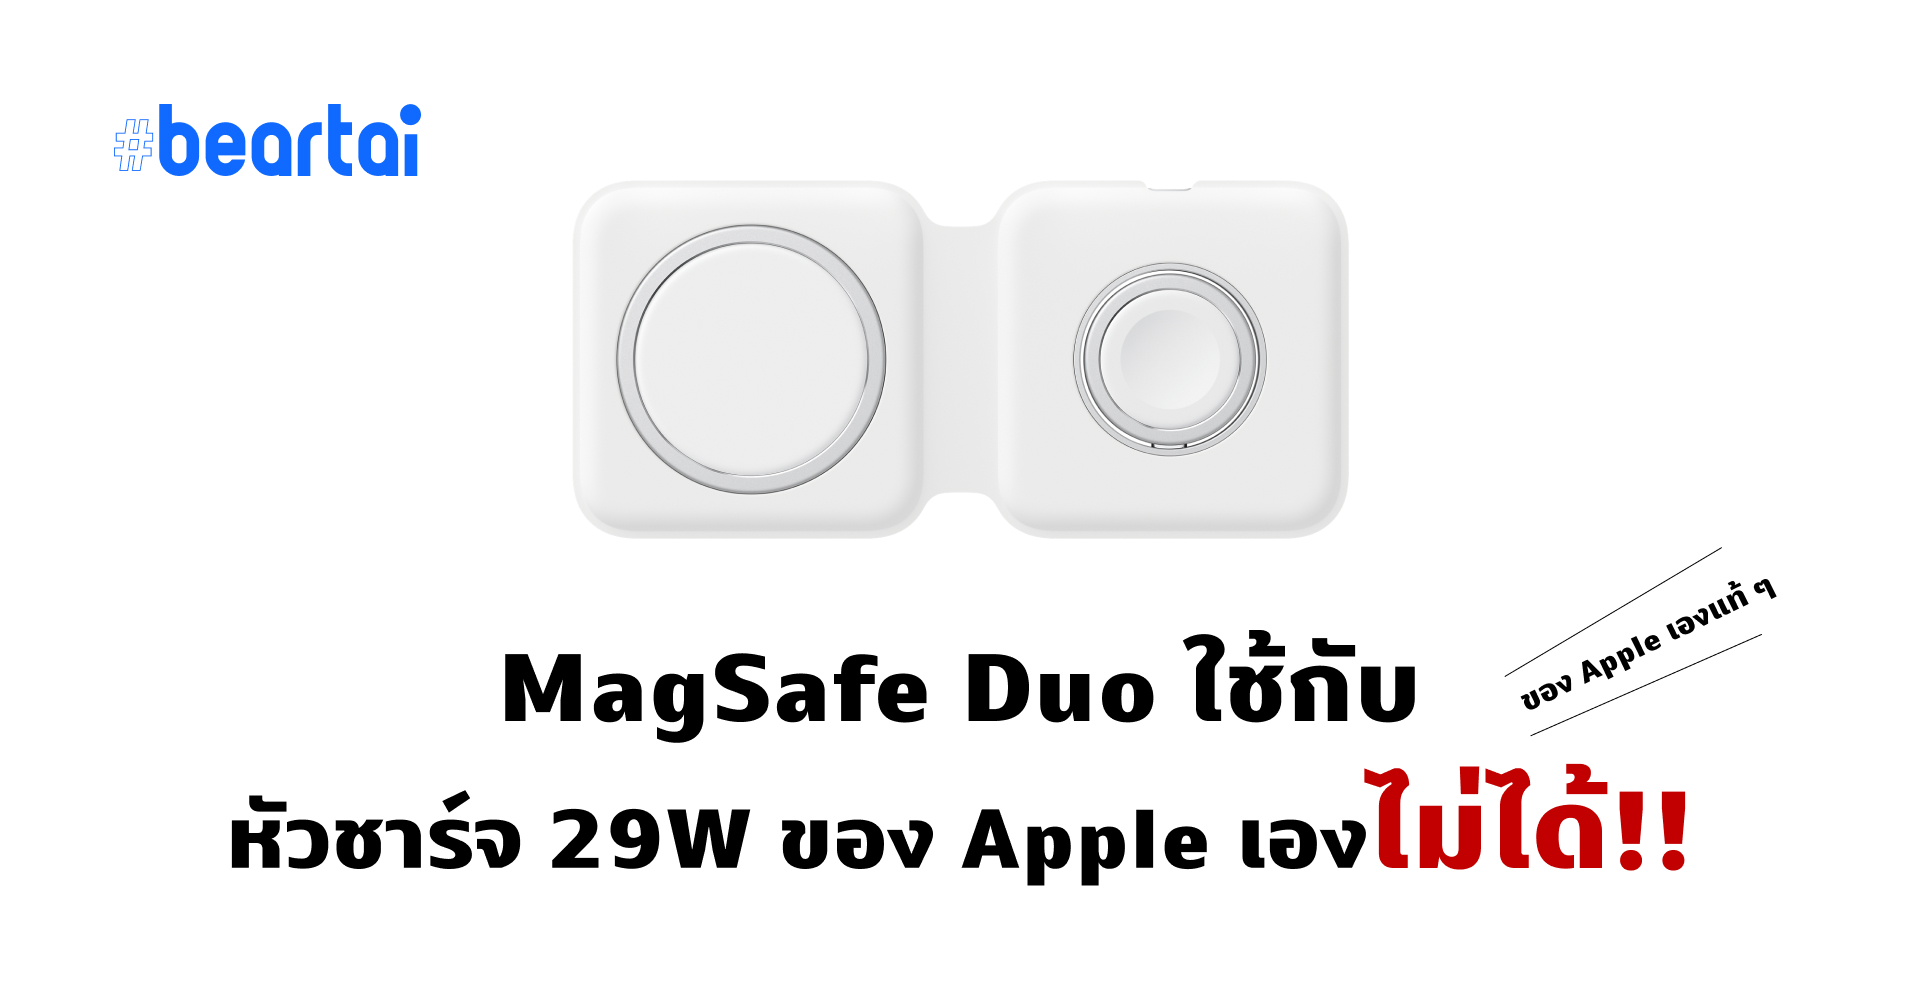 ไงเป็นงั้น?? แอปเปิ้ลบอกเอง หัวชาร์จแอปเปิล 29W ไม่สามารถใช้กับ MagSafe Duo ได้